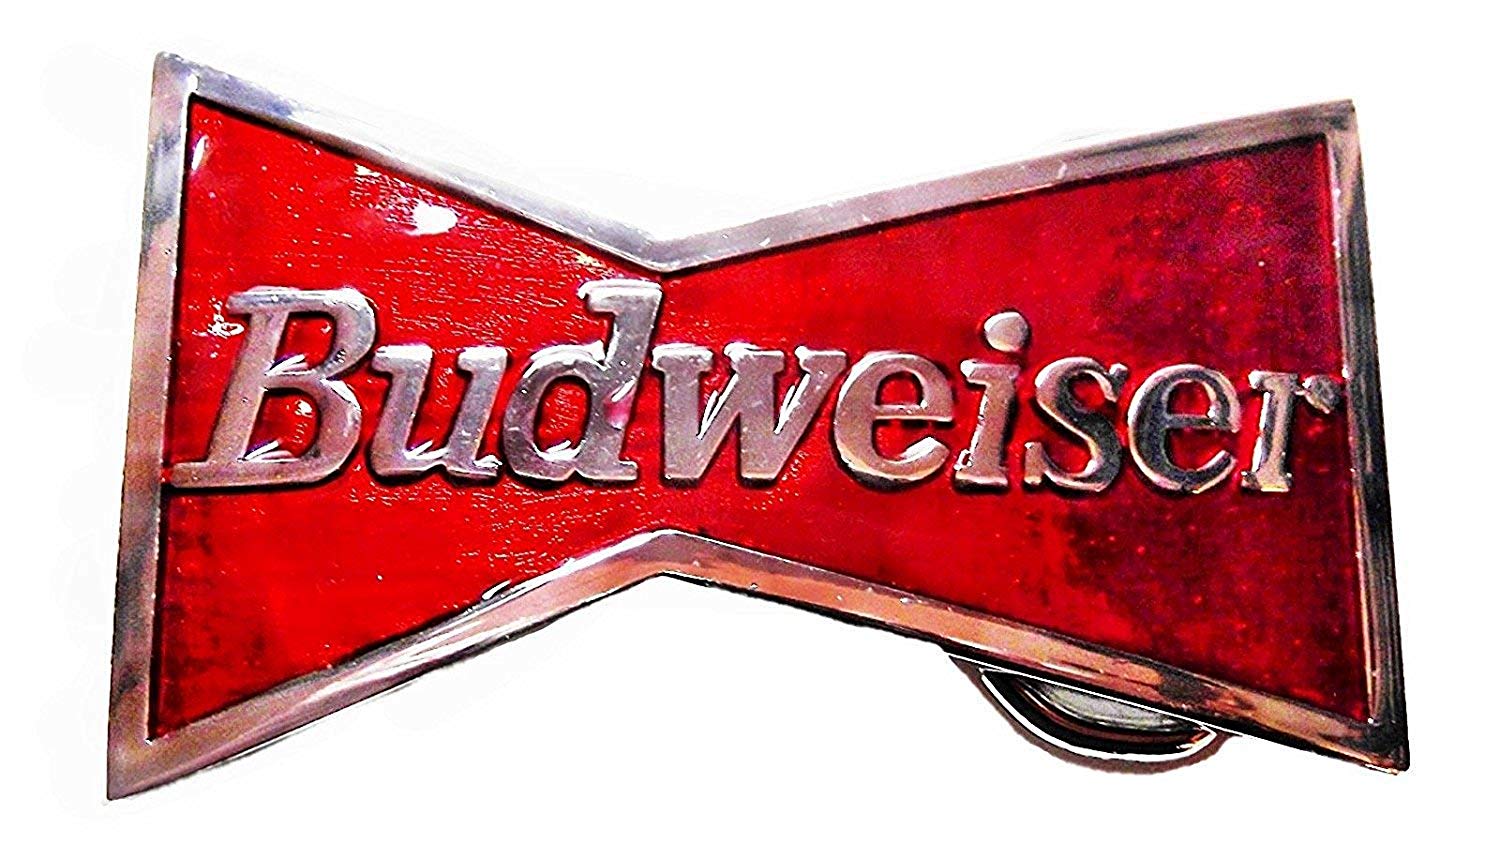 Beers Logo - Budweiser King Of Beers Logo Metal Enamel Belt Buckle Red, Silver